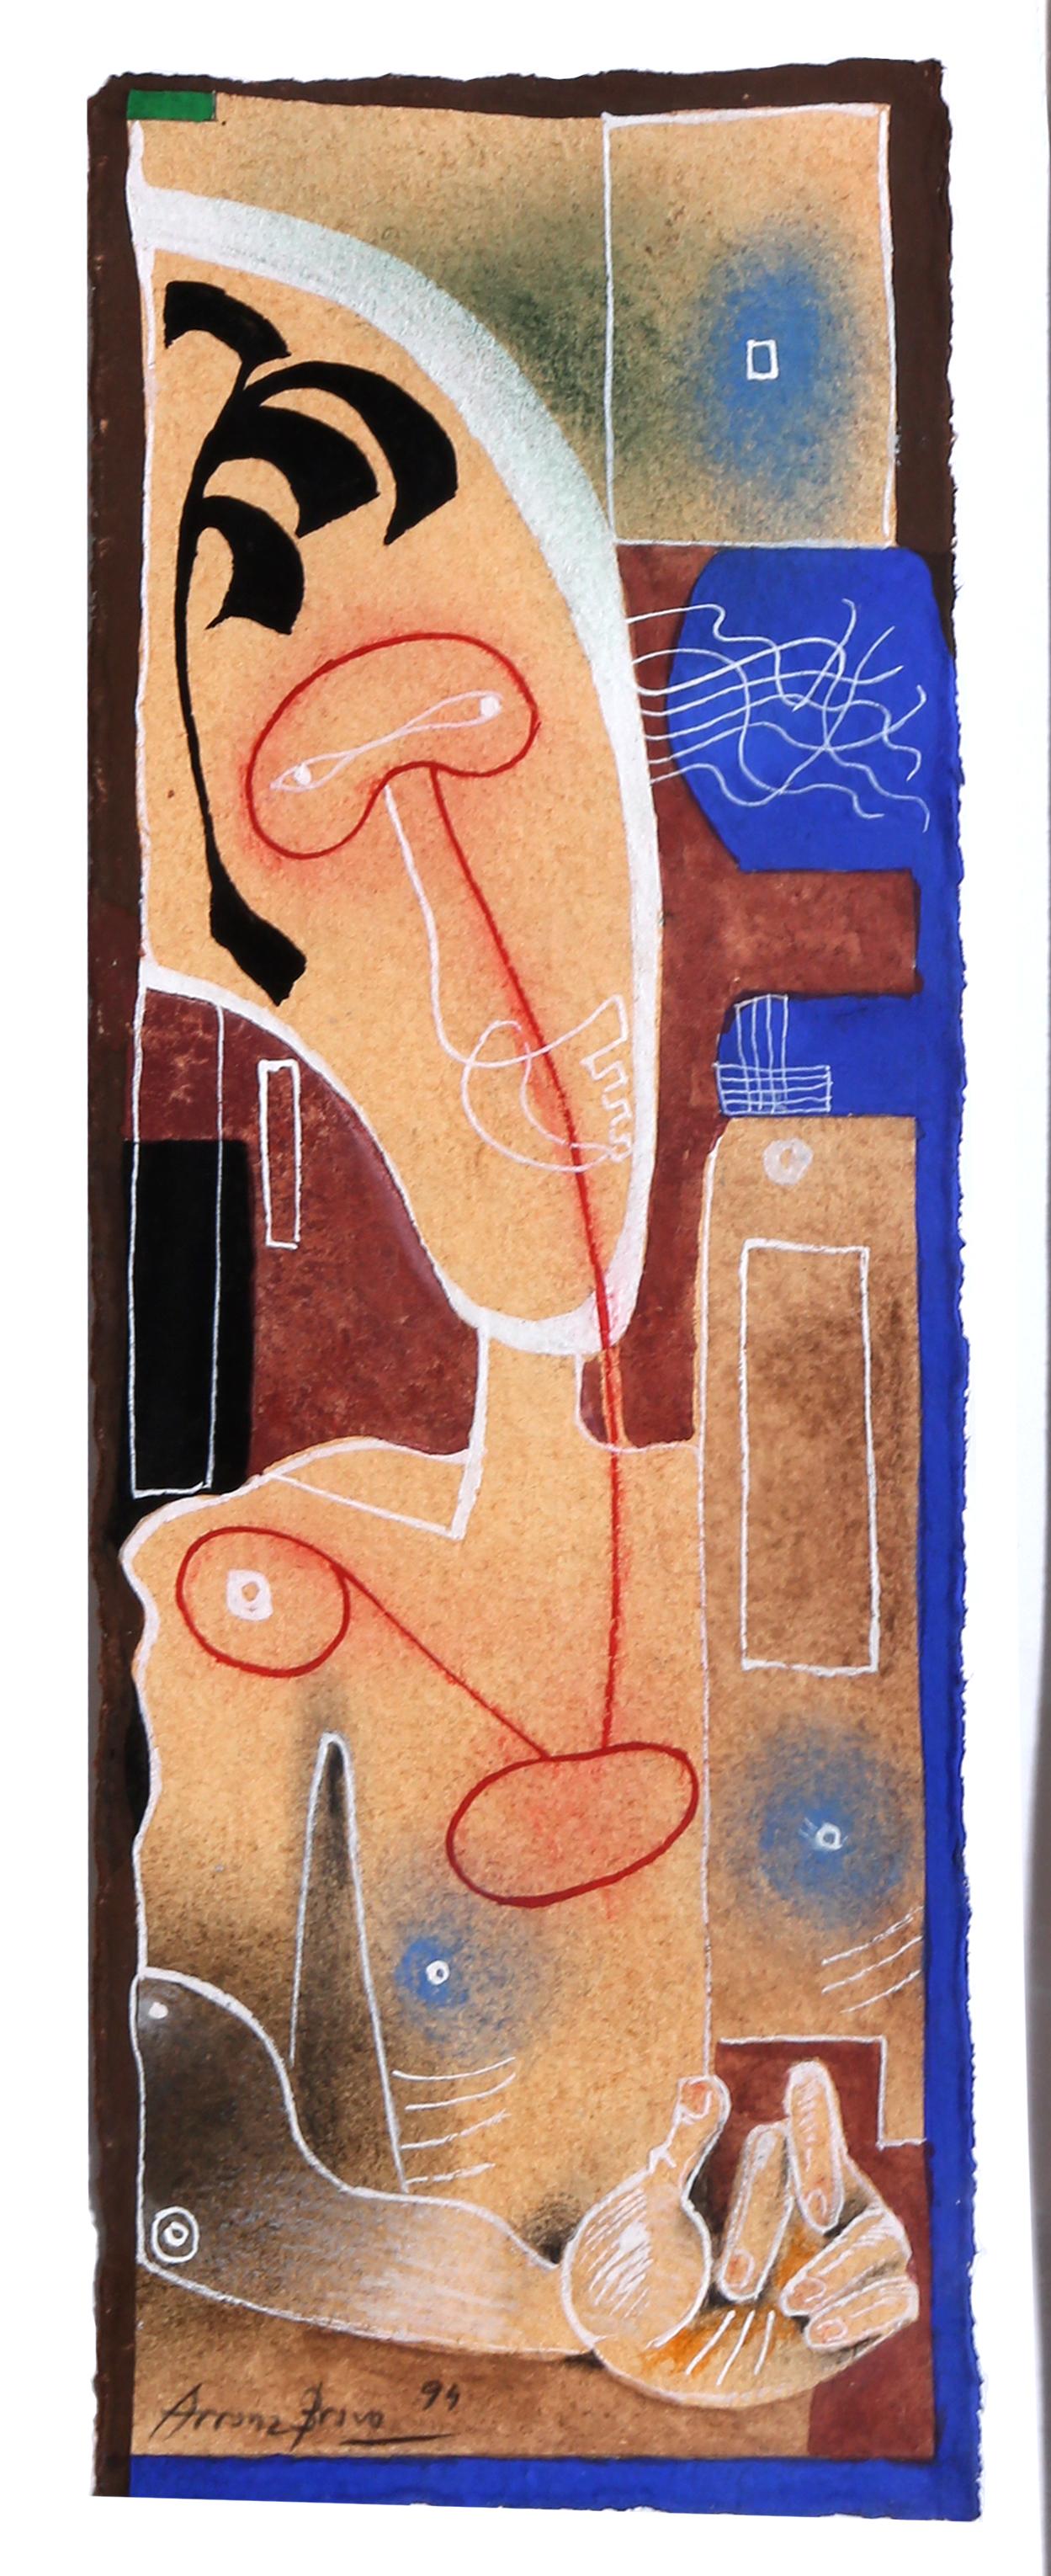 Künstler: Eduardo Arranz-Bravo, Spanier (1941 - )
Titel:	Cadaques Nr.24
Jahr:	1994
Medium:	Mischtechnik (Aquarell und Farbstift) auf Papier, signiert und datiert
Größe: 13,75 x 5 in. (34,93 x 12,7 cm)
Rahmen: 21 x 14,75 Zoll